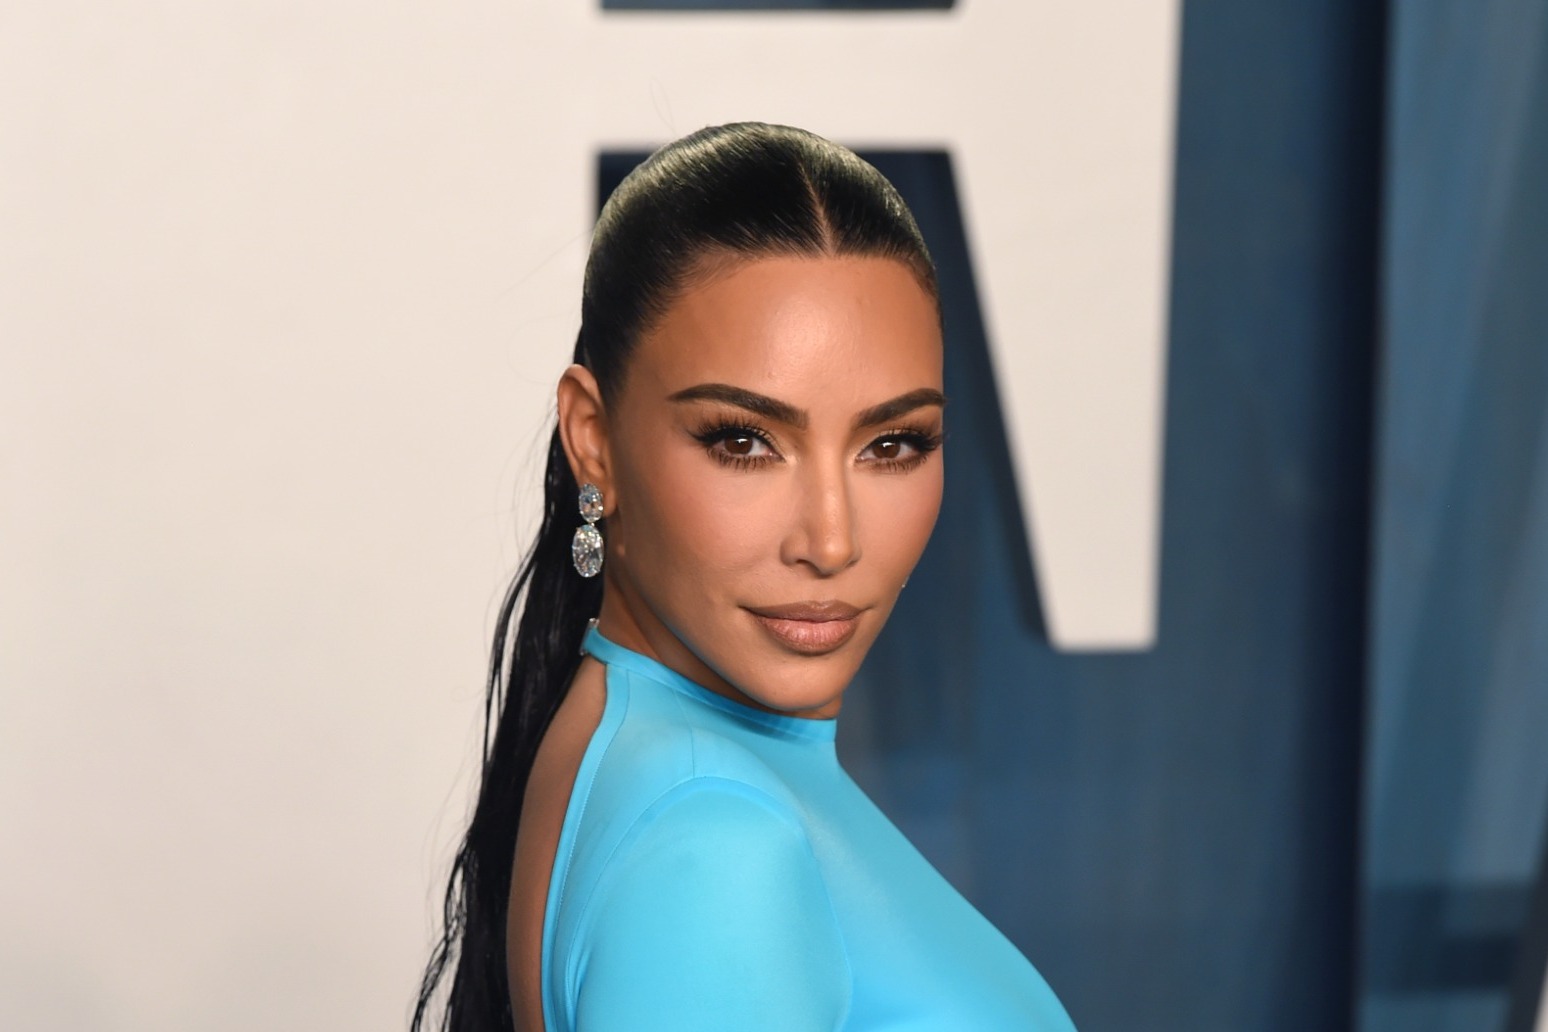 Kim Kardashian ‘honoured’ to be wearing historic Marilyn Monroe gown at Met Gala 